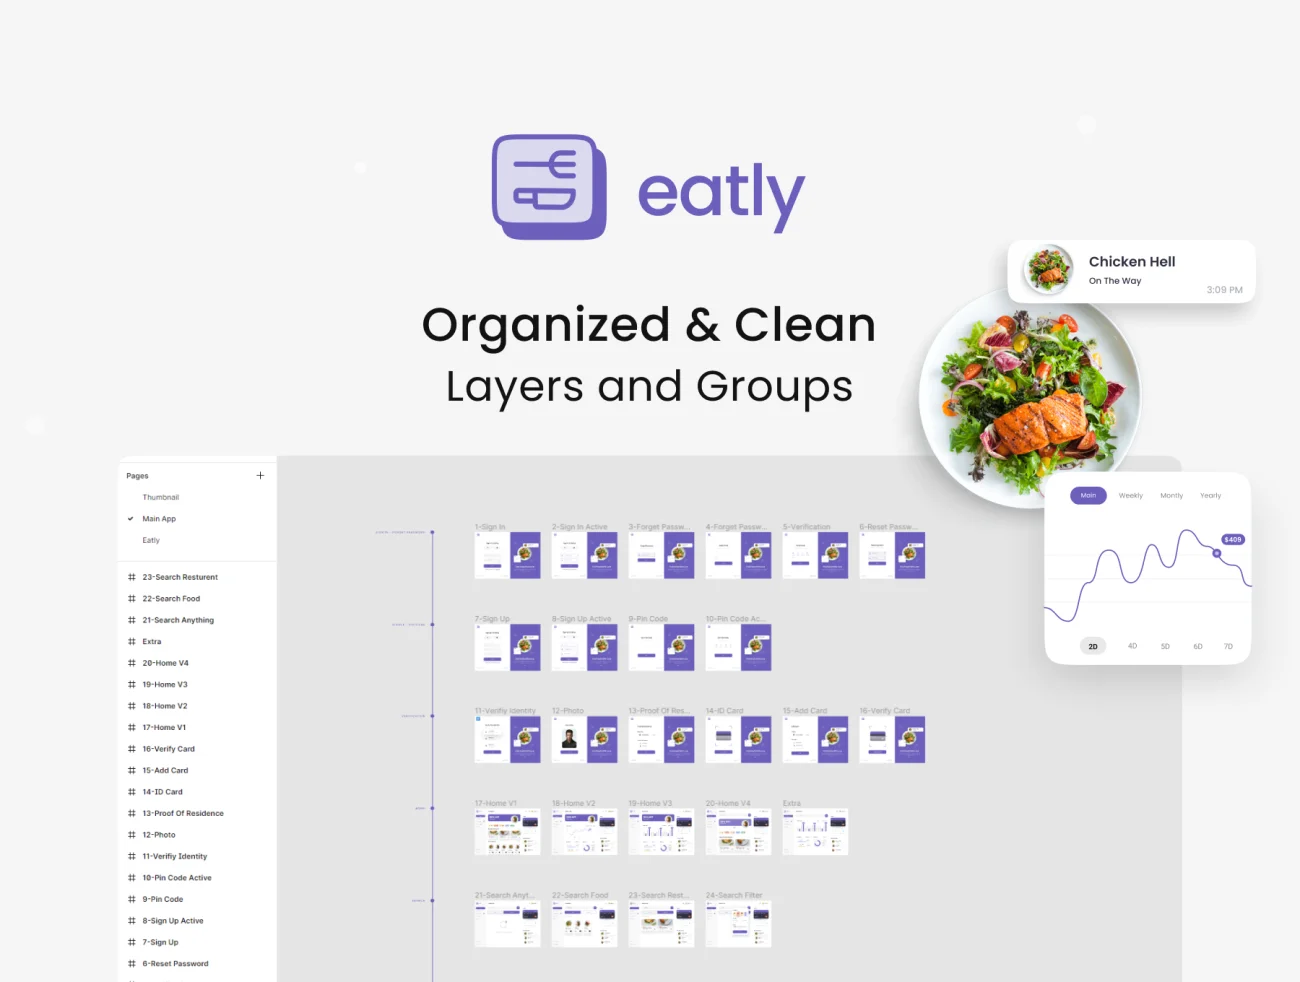 33屏食品配送后台管理数据可视化仪表板 UI 套件 Eatly - Food Deilvery Dashboard UI KIT .figma-UI/UX、ui套件、介绍、列表、卡片式、图表、数据可视化-仪表板-到位啦UI